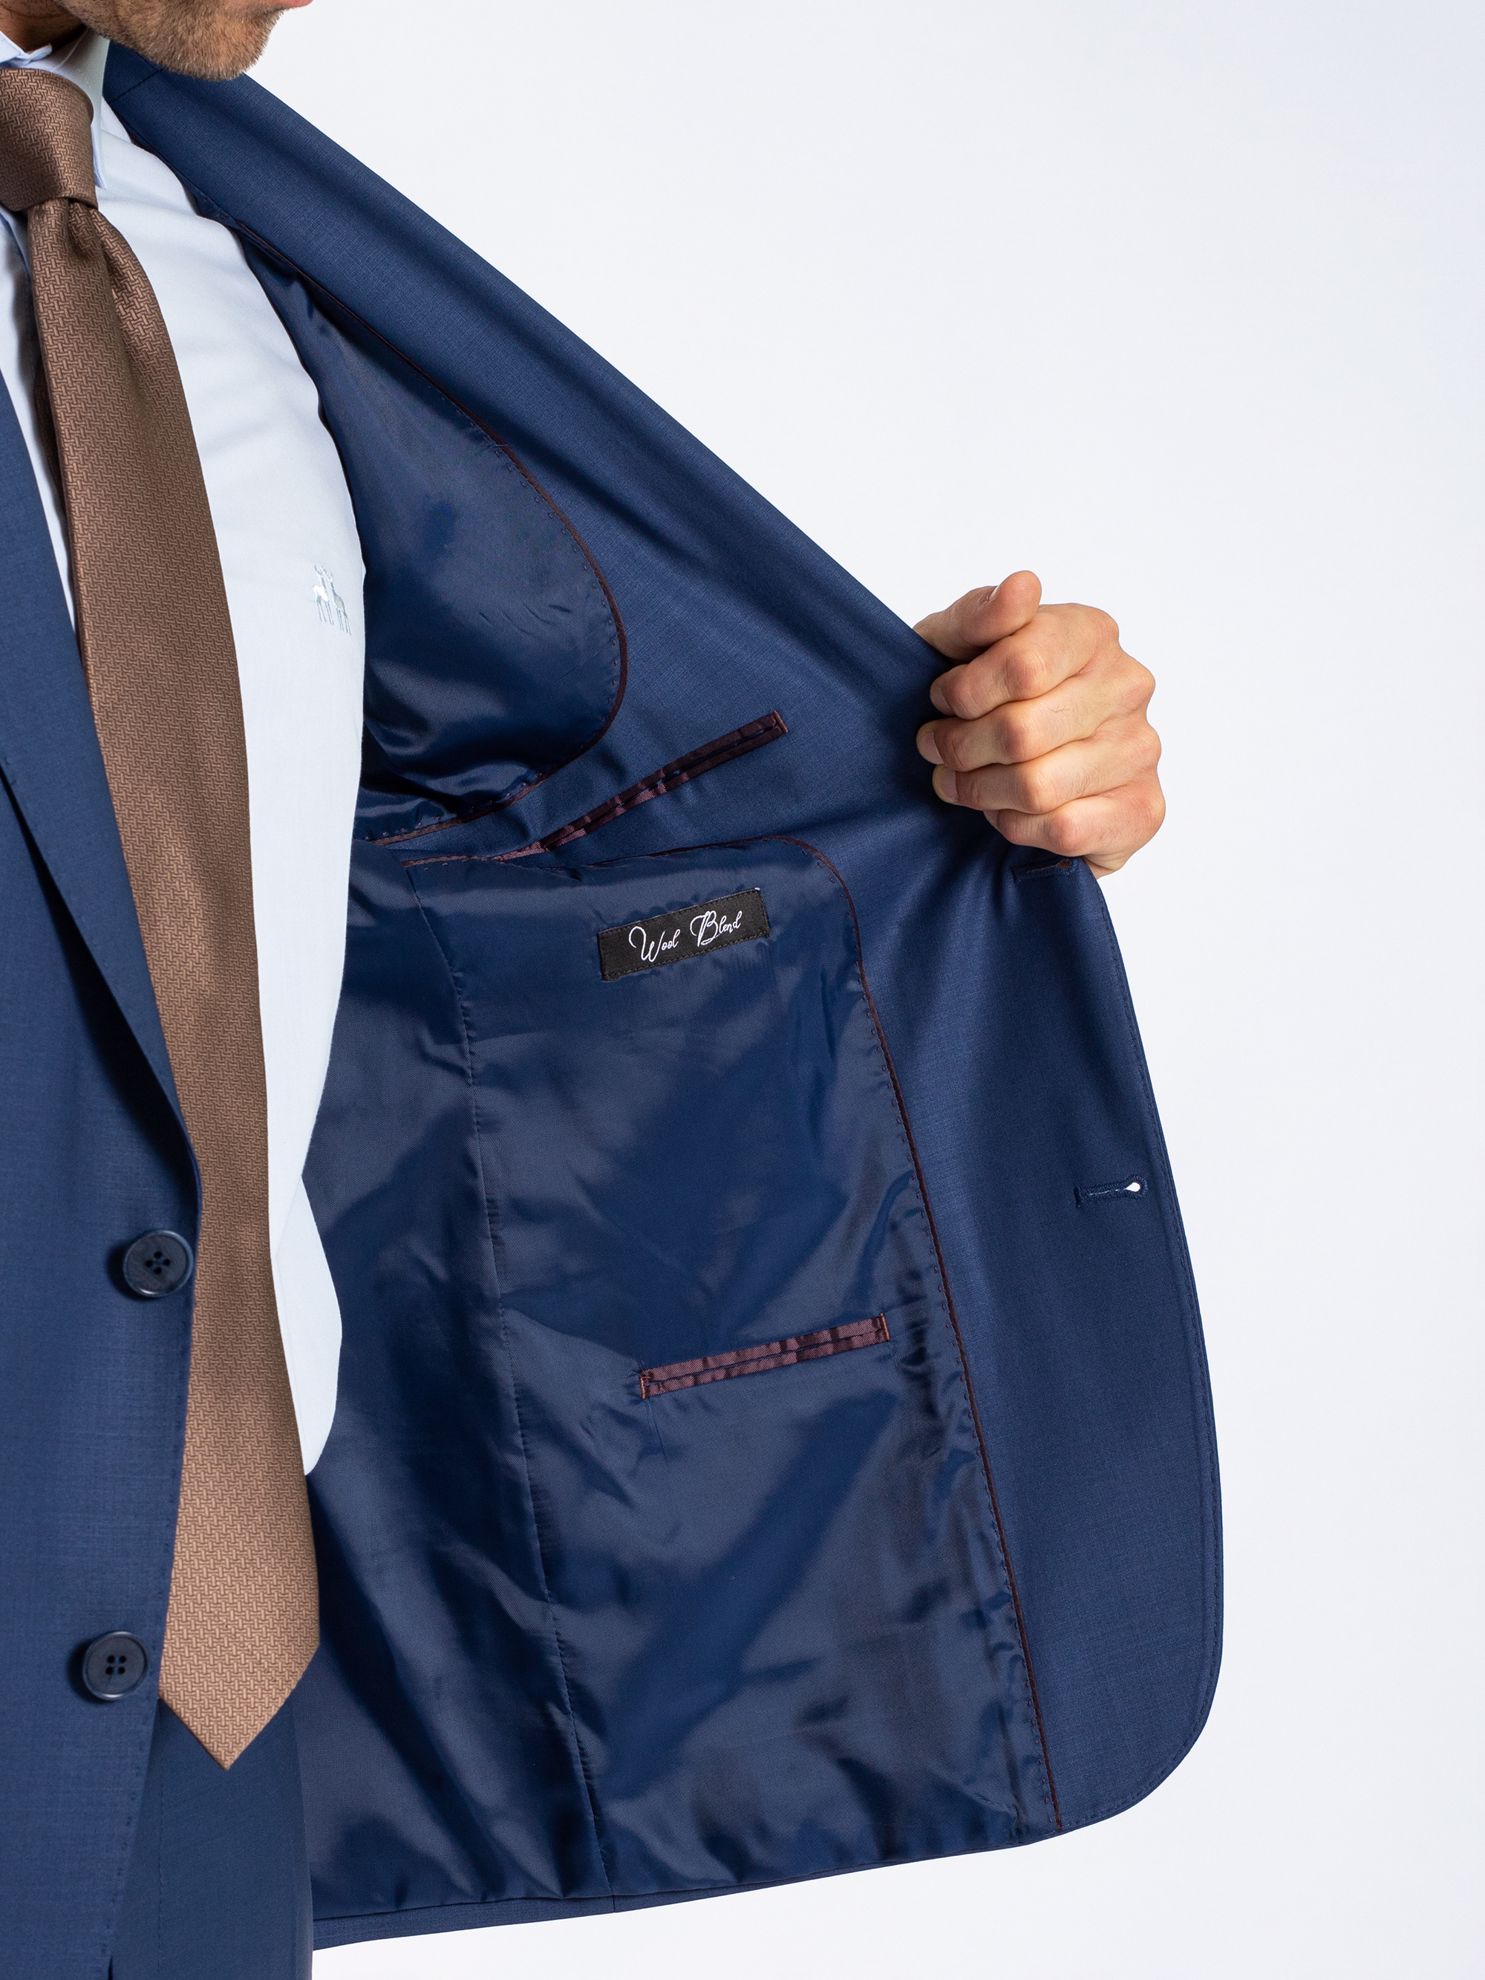 Karaca Erkek 4 Drop Takım Elbise-Saks Mavi. ürün görseli